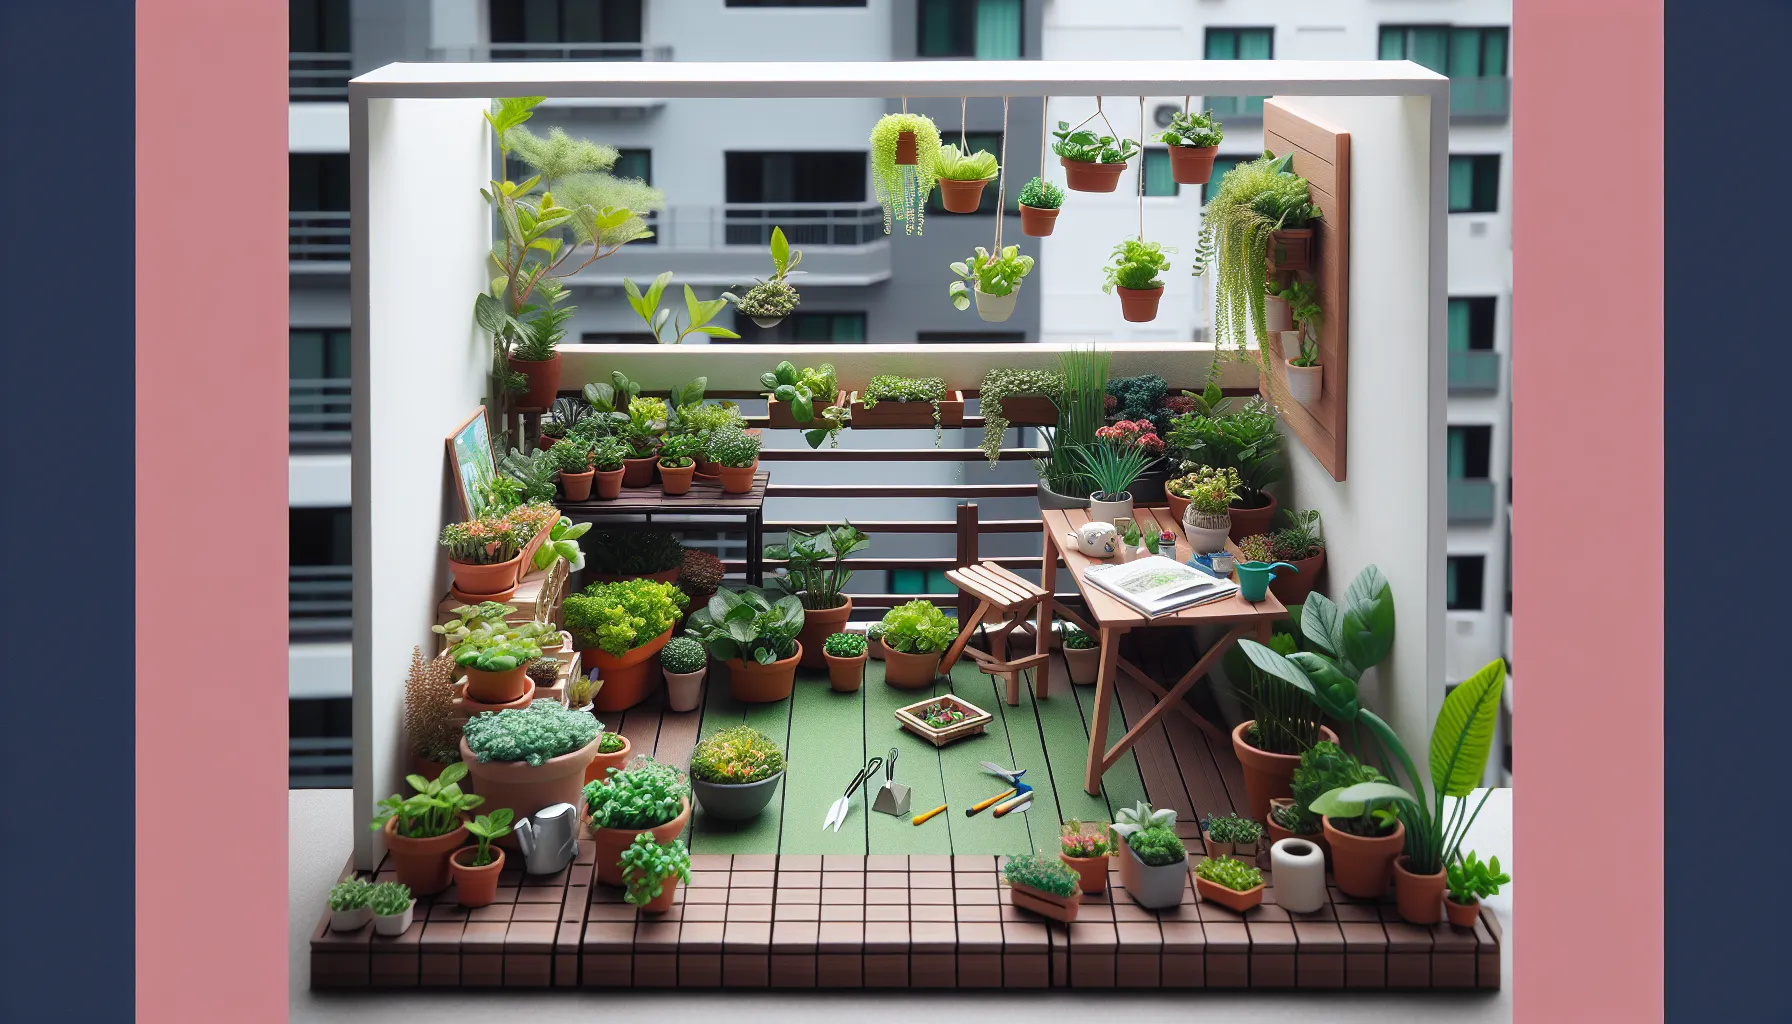 Imagen de un mini huerto en un balcón con variedad de plantas en macetas, demostrando cómo se puede cultivar en espacios reducidos.